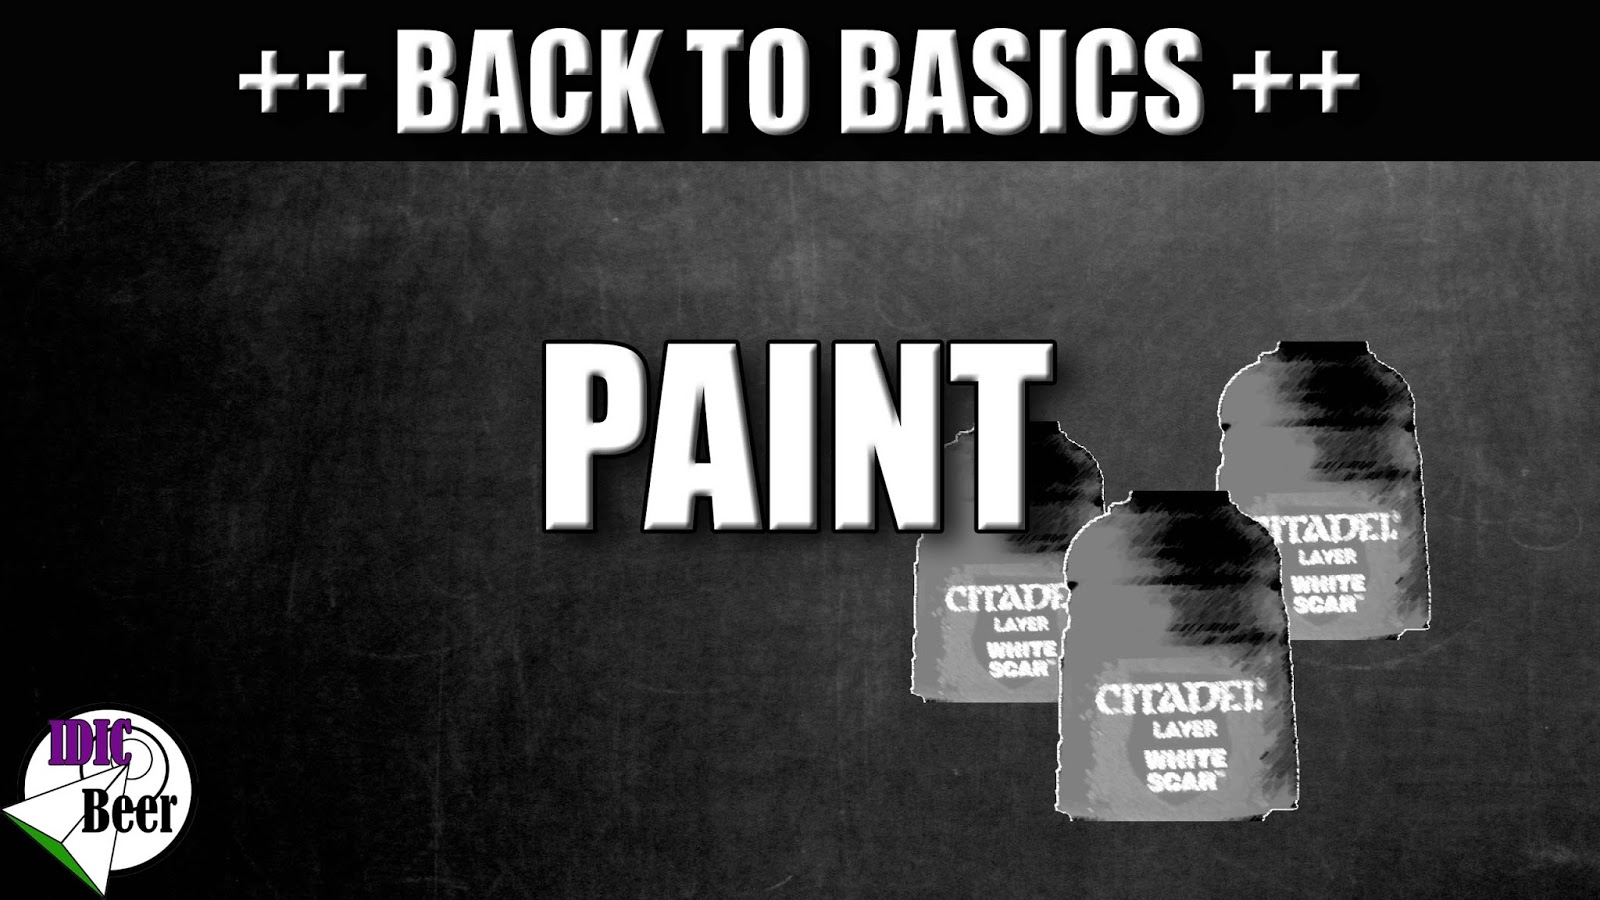 Back post. Back to Basics. Go back to Basics. Kevin Dundon's back to Basics. Paint it back.